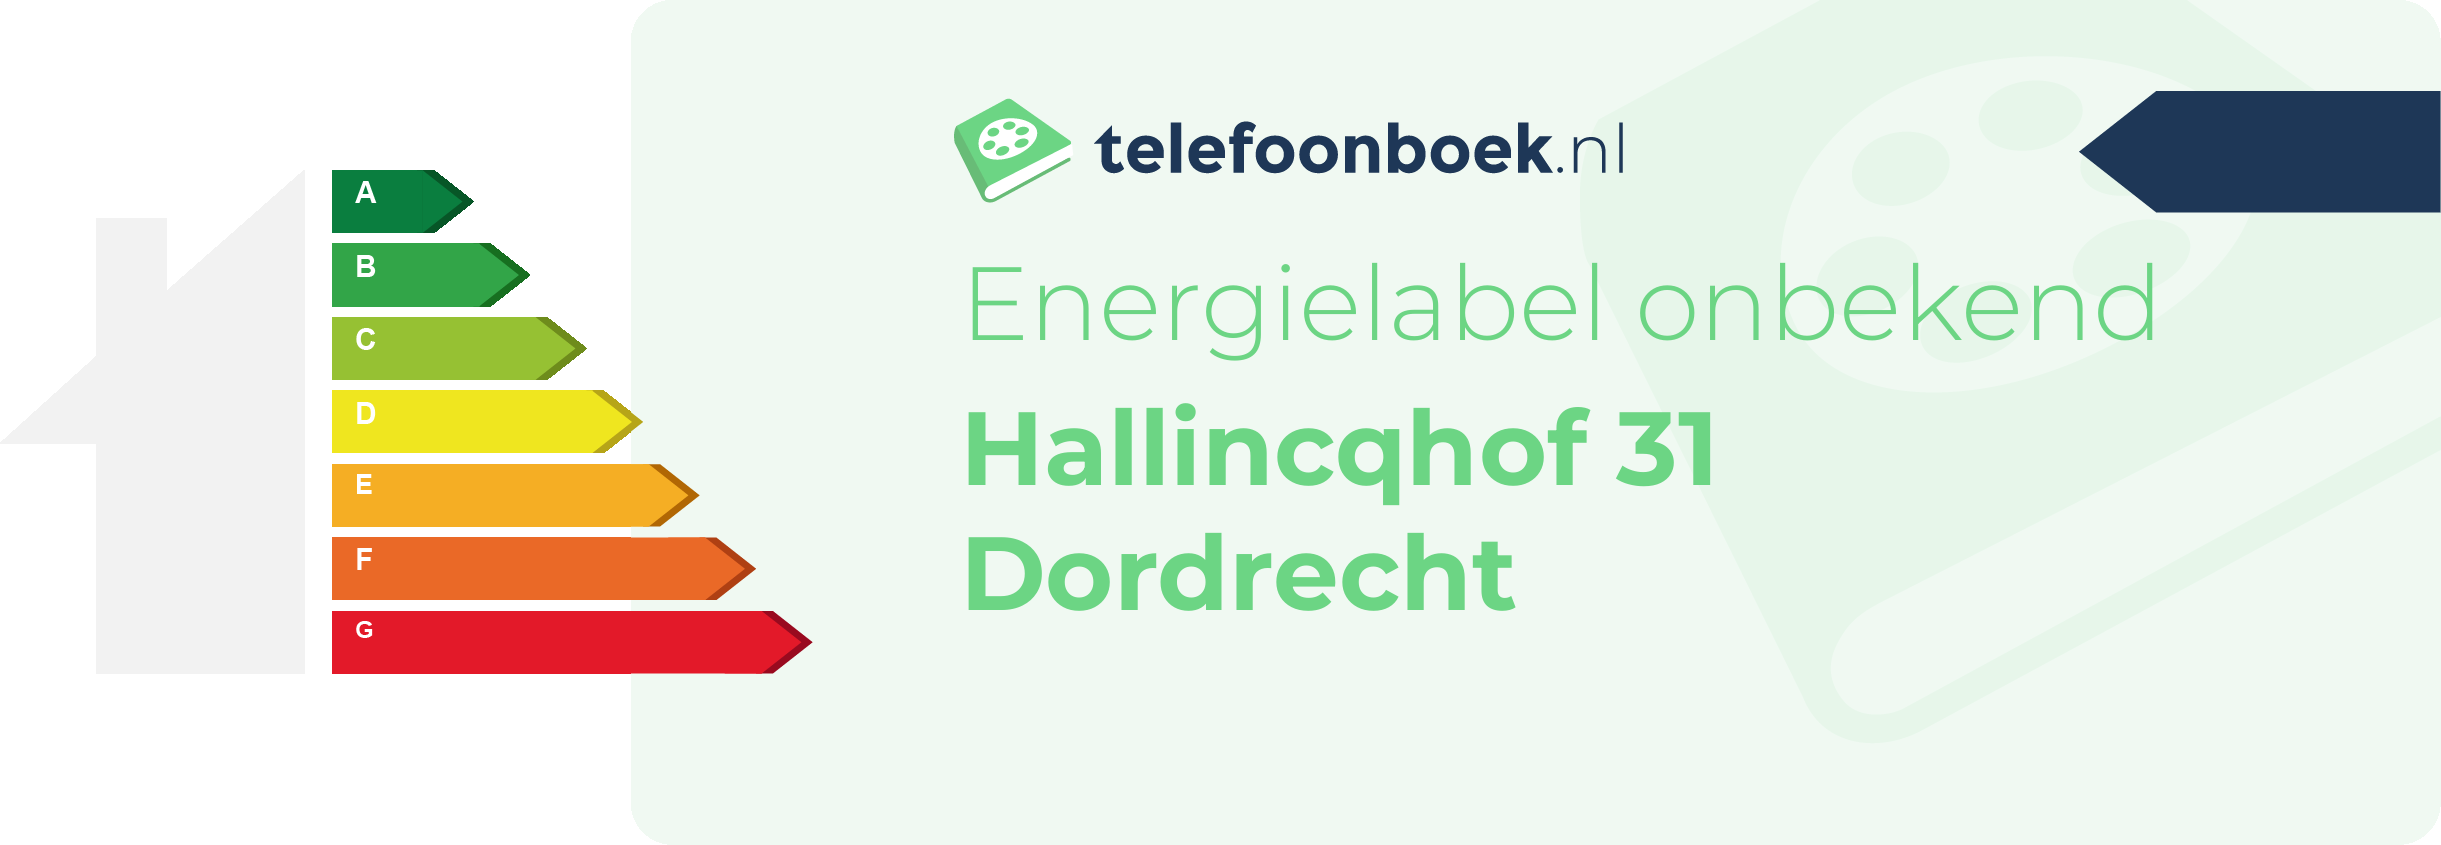 Energielabel Hallincqhof 31 Dordrecht